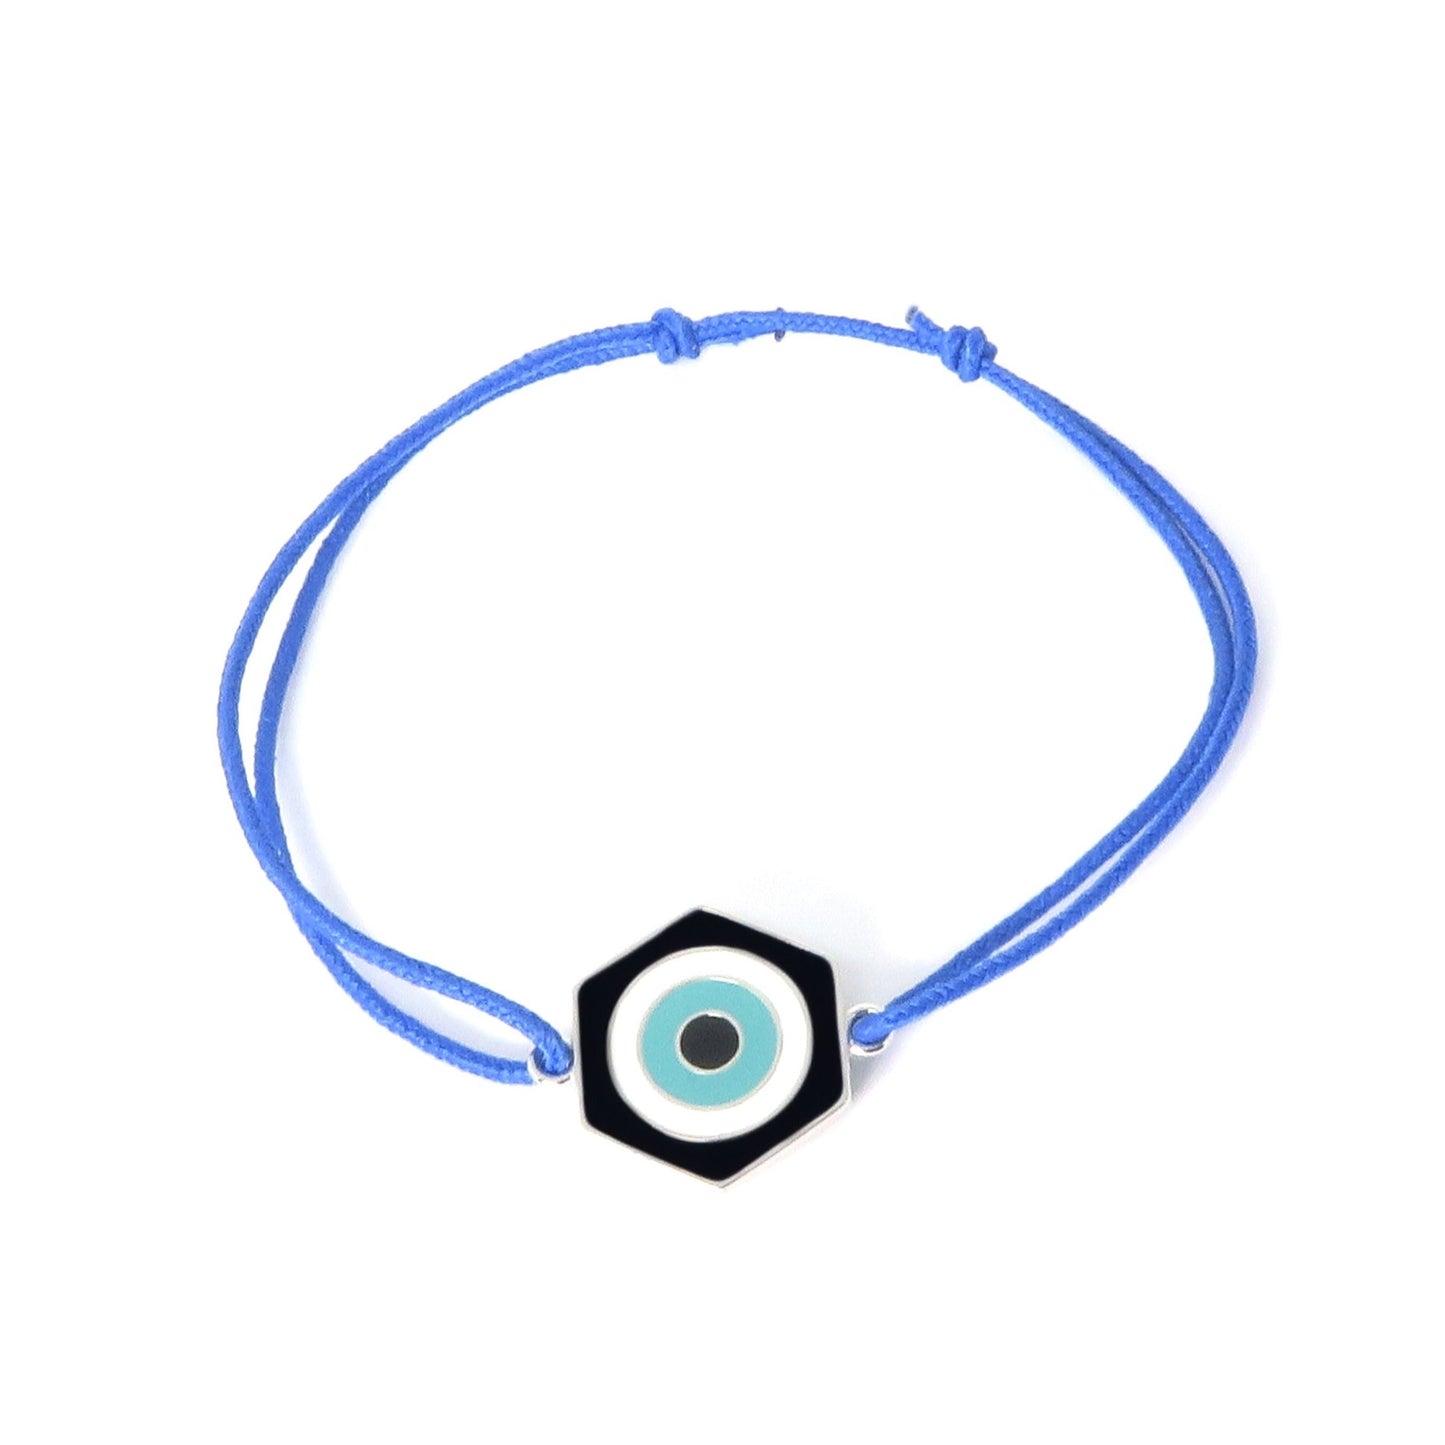 MORA bijoux bracelet Protection, oeil stylisé et émaillé de trois couleurs noir, blanc, bleu ciel, bijou réversible en argent 925, monté sur cordon ajustable